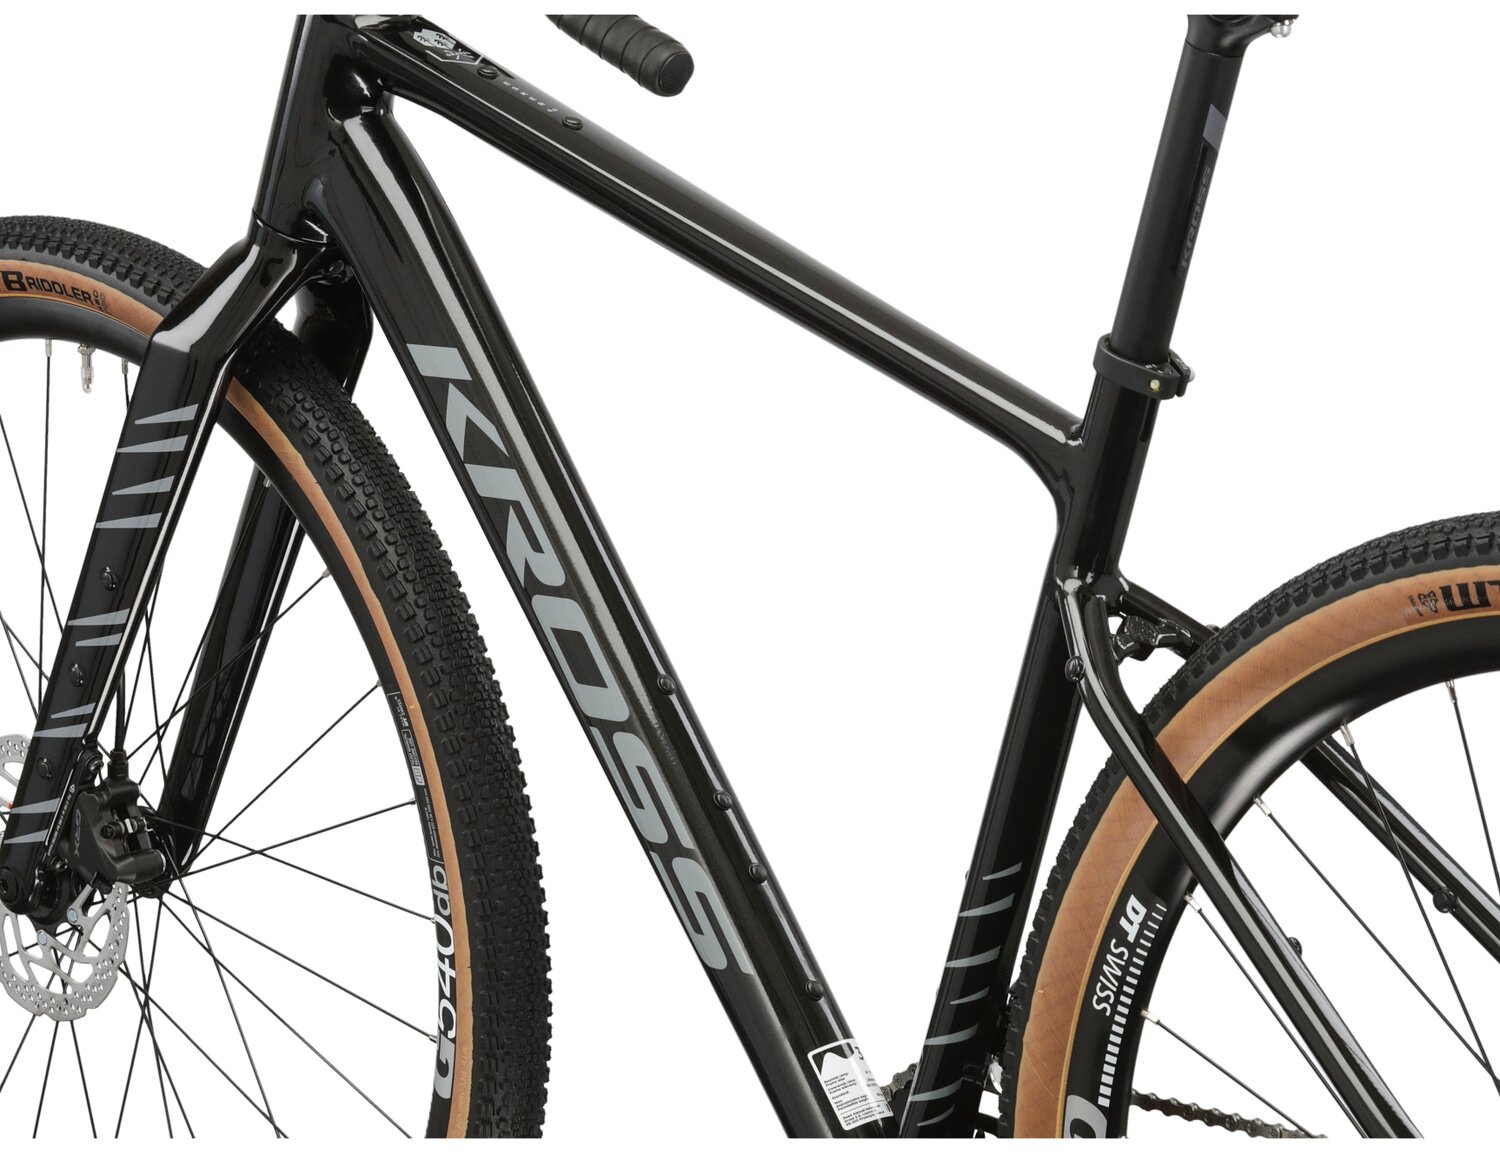  Rama aluminiowa nowej generacji gen2 w kolorze czarnym oraz carbonowy widelec z otworami montażowymi w rowerze gravelowym Kross Esker 6.0 